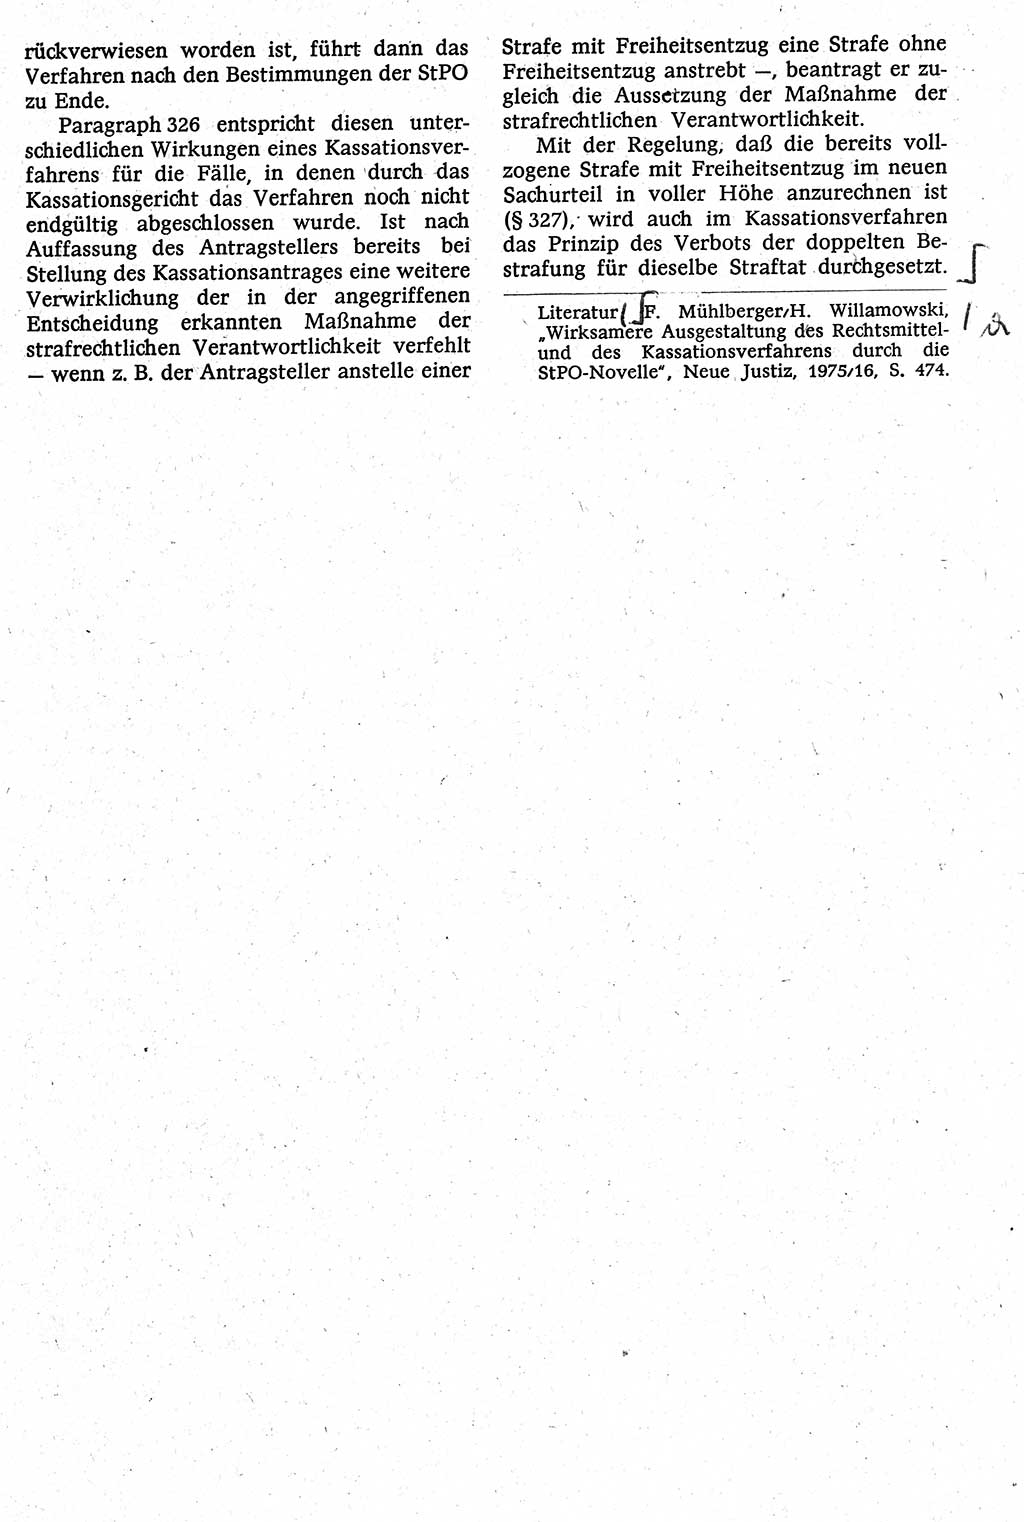 Strafverfahrensrecht [Deutsche Demokratische Republik (DDR)], Lehrbuch 1982, Seite 339 (Strafverf.-R. DDR Lb. 1982, S. 339)